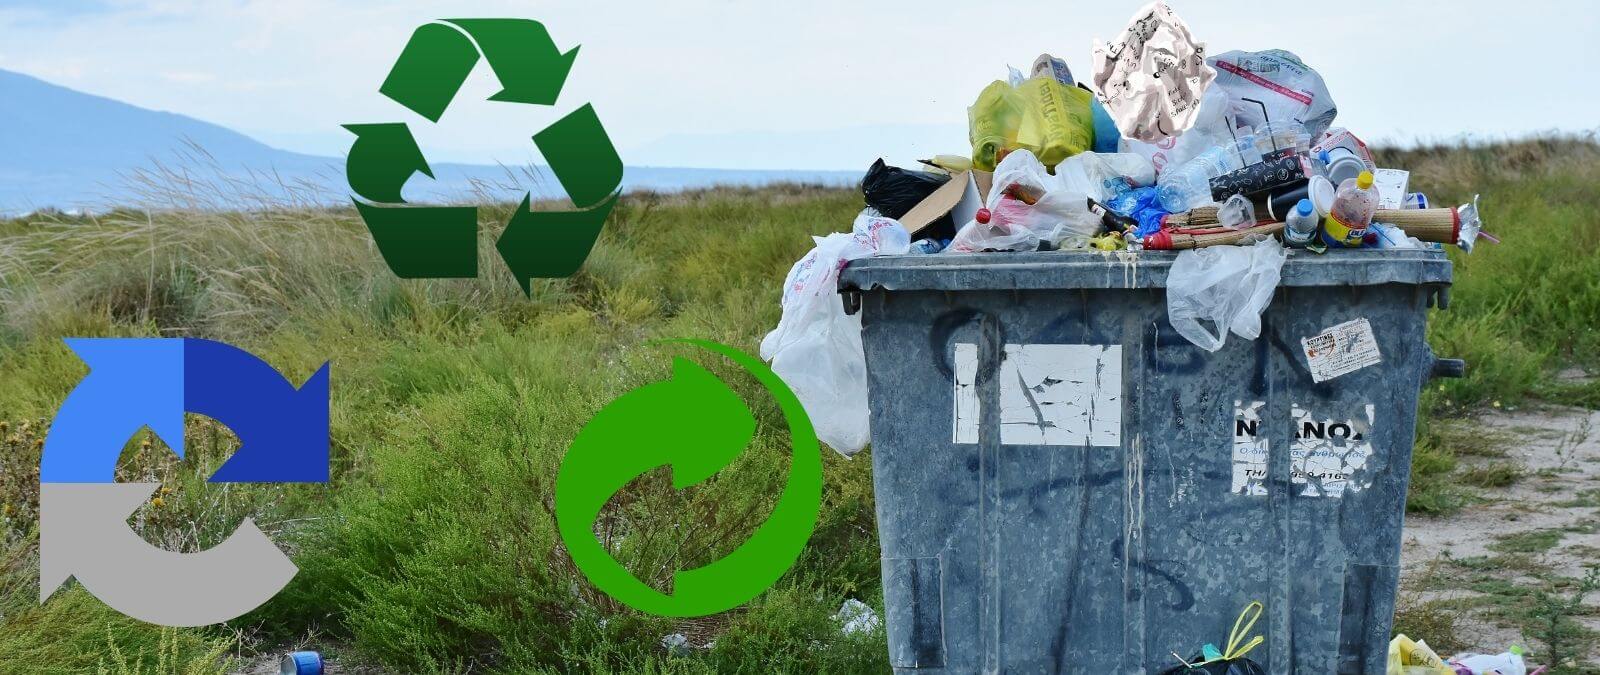 La importancia de reducir y reutilizar los residuos, además de reciclar,  para disminuir el impacto ambiental de nuestro consumo ·  -  Periodismo para que no te la cuelen